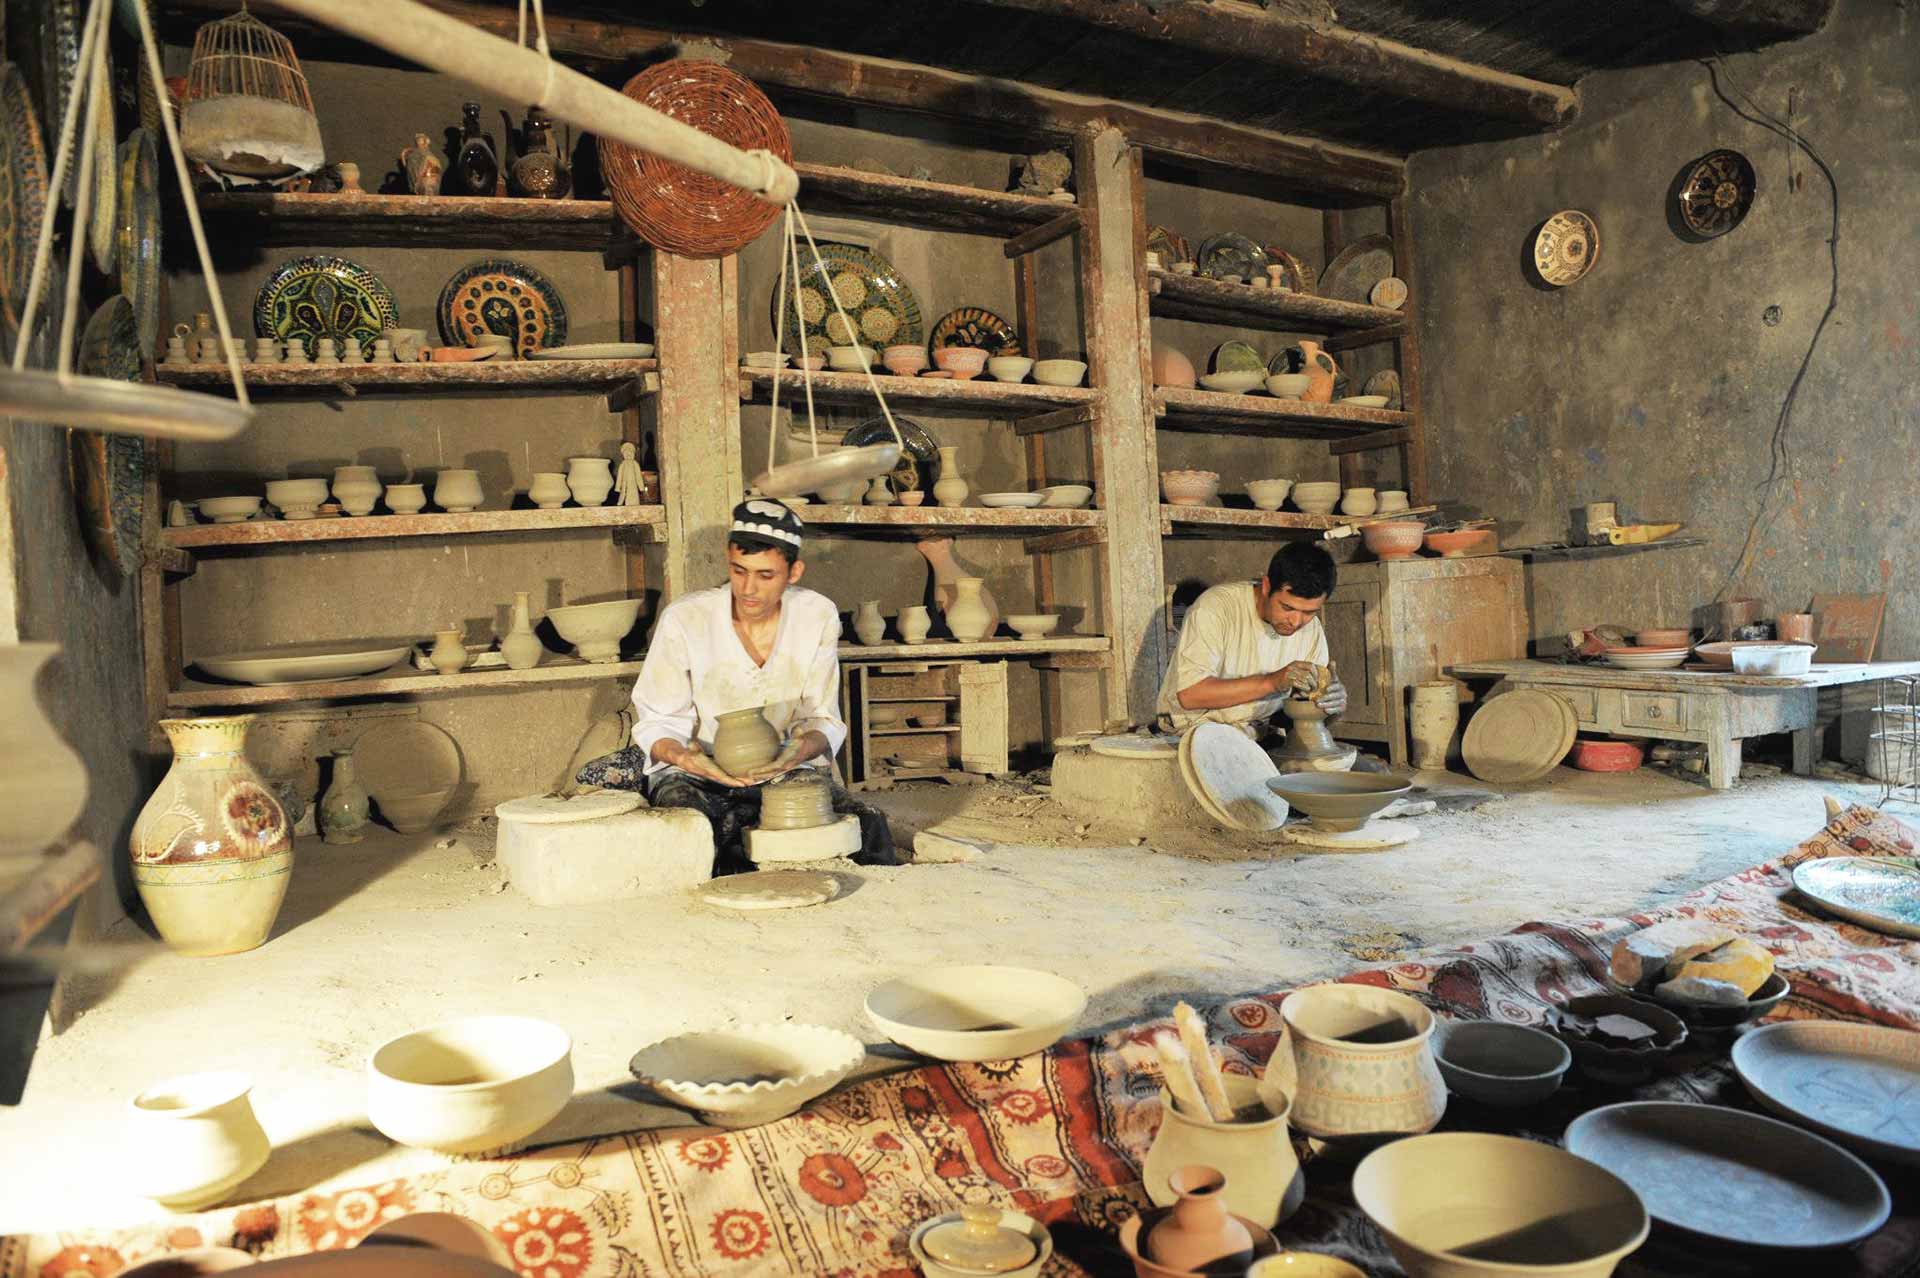 Textiles, Pottery & Ceramics of Uzbekistan